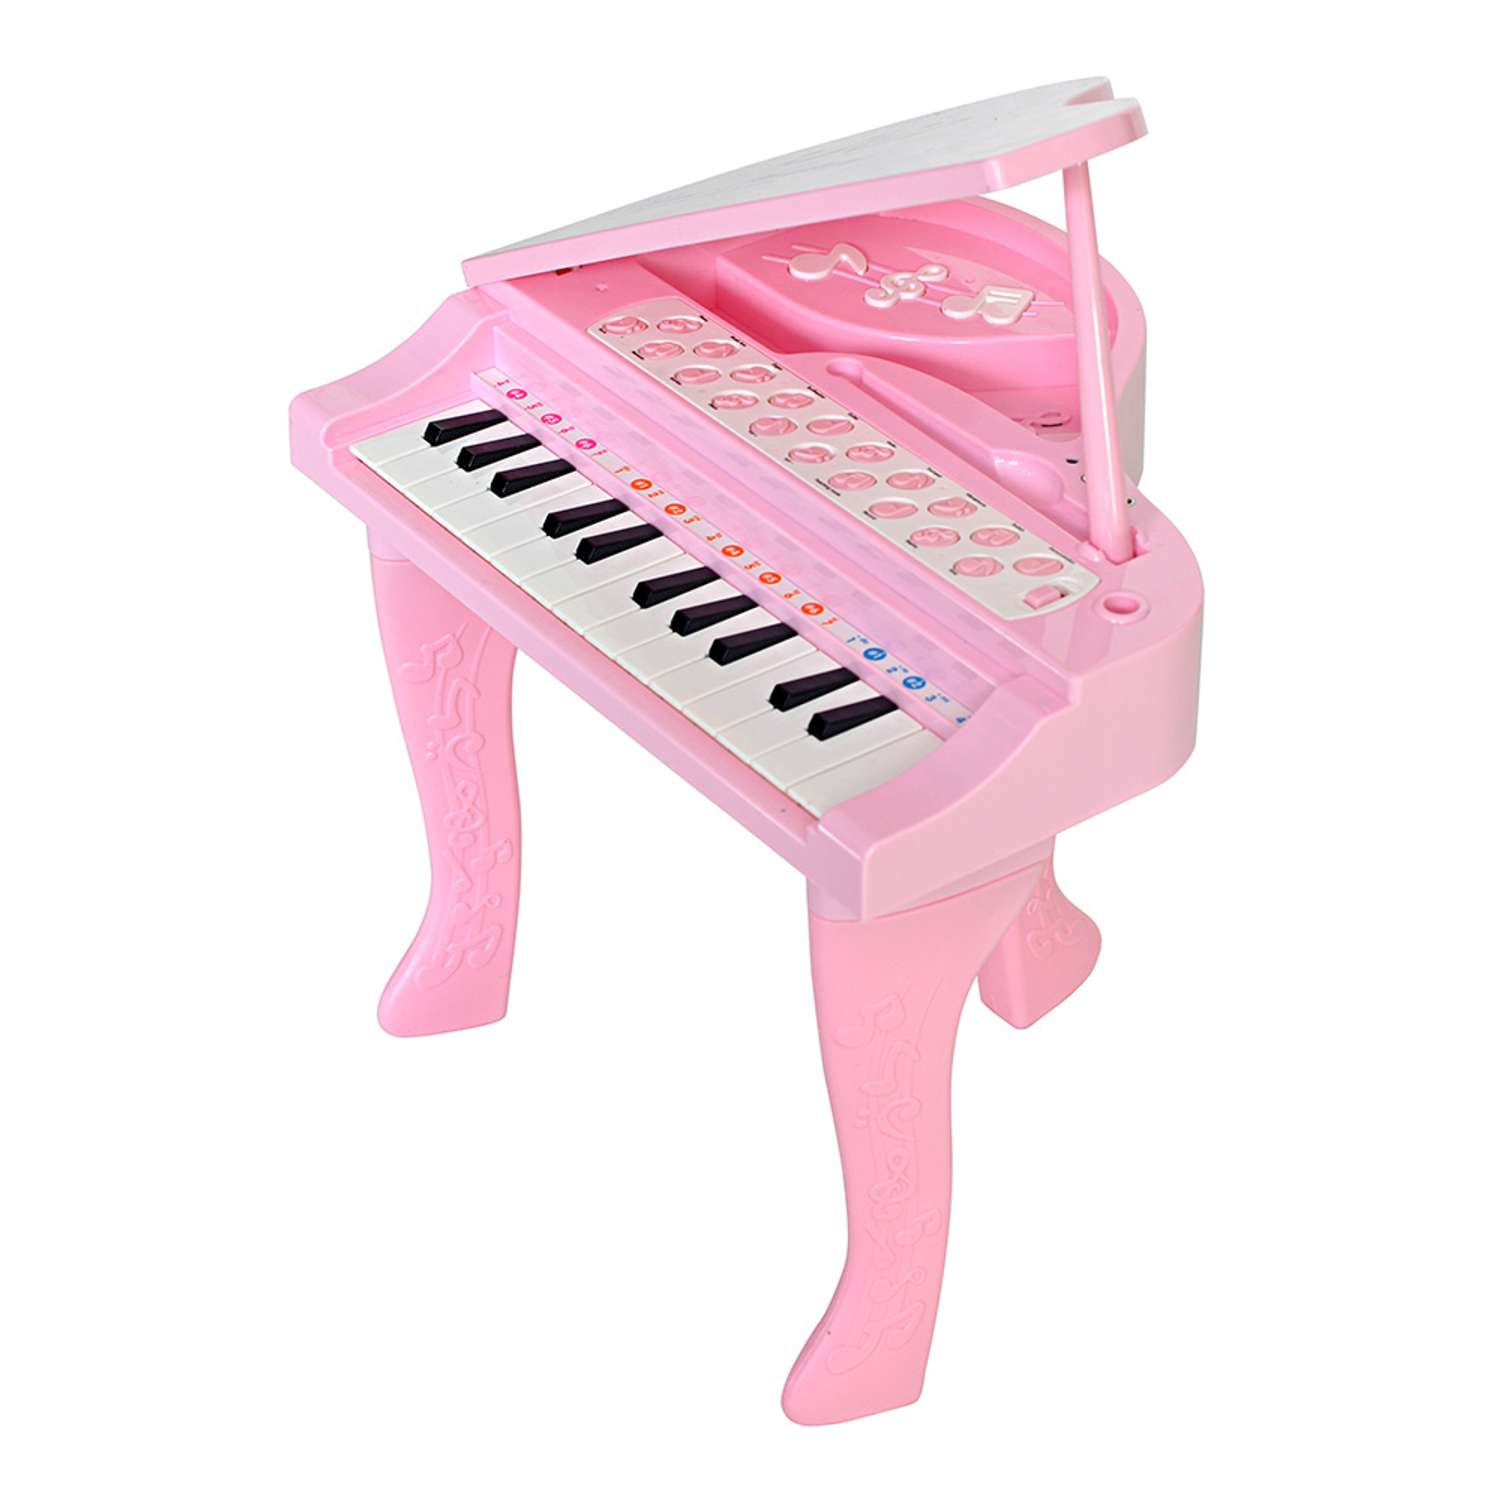 Музыкальный детский центр EVERFLO Рояль розовый HS0356829 - фото 2